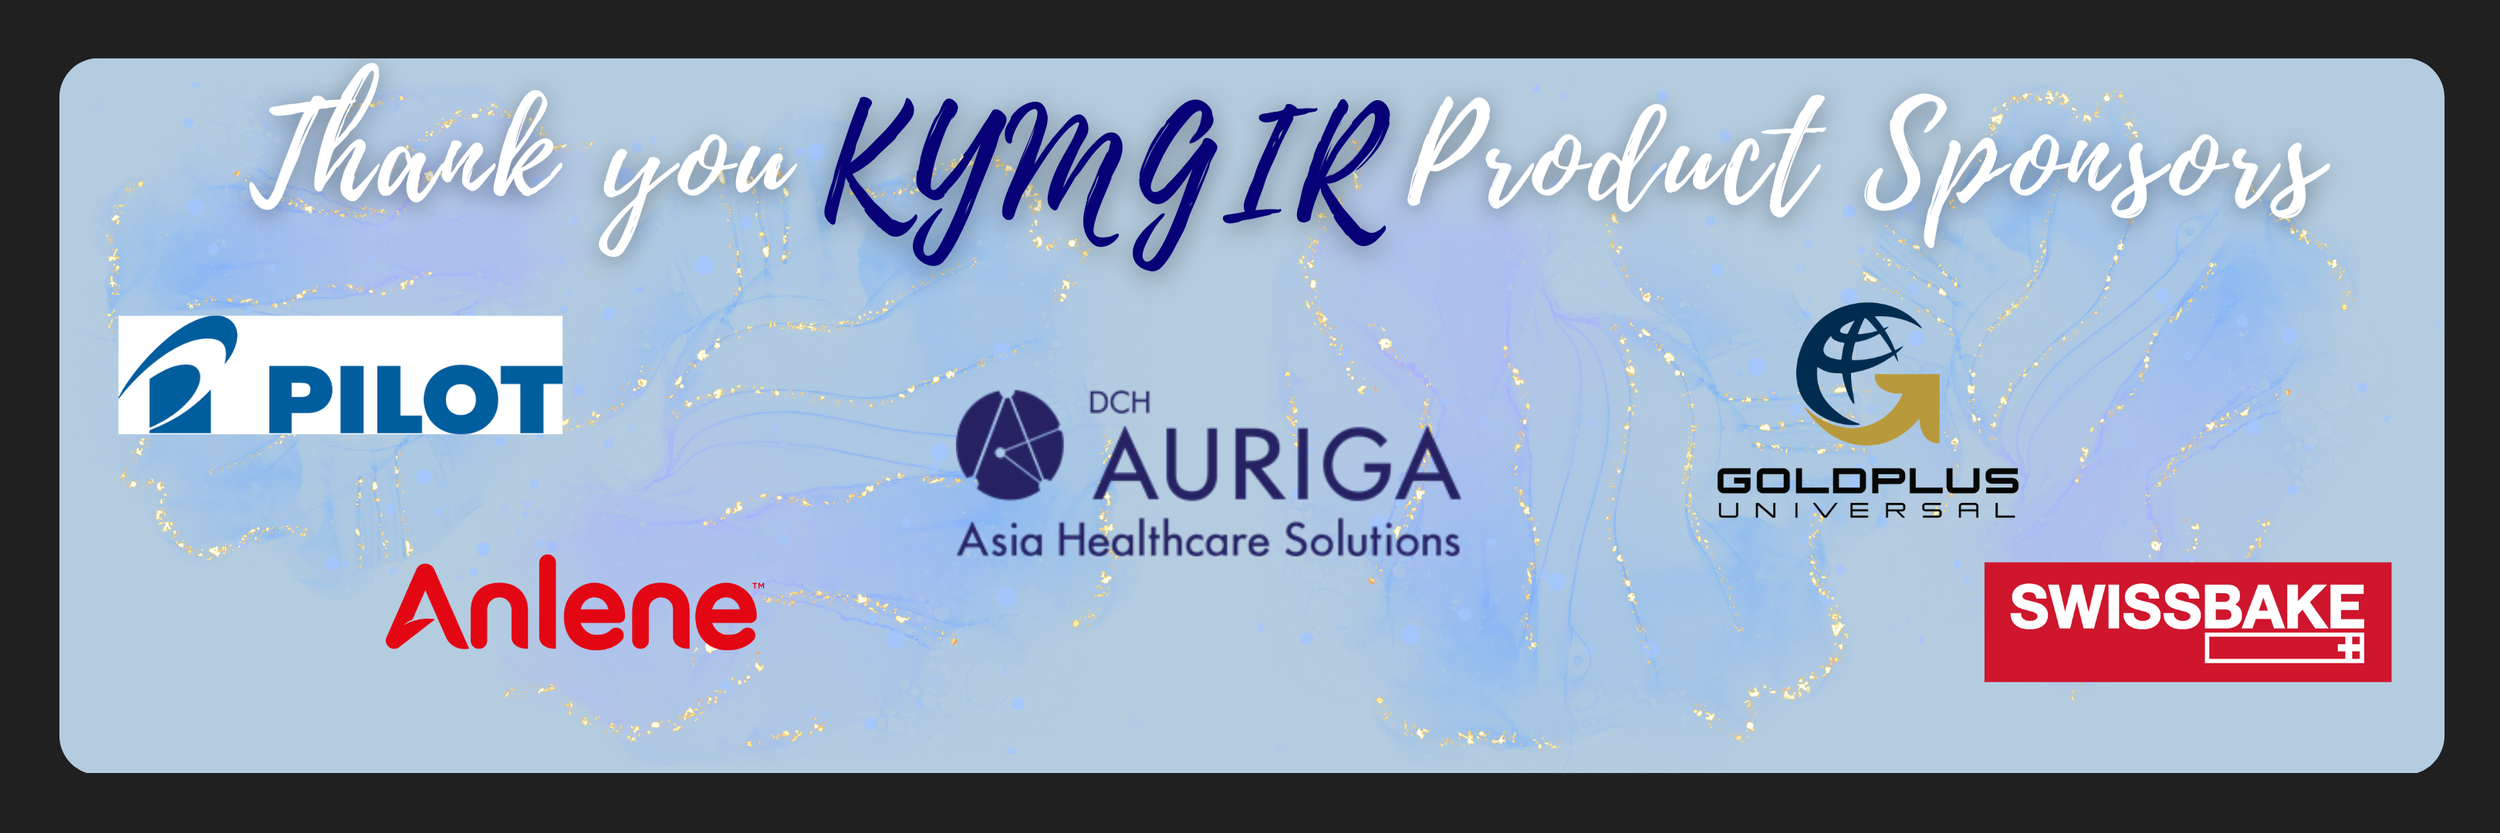 KYMGIR Product Sponsors.png